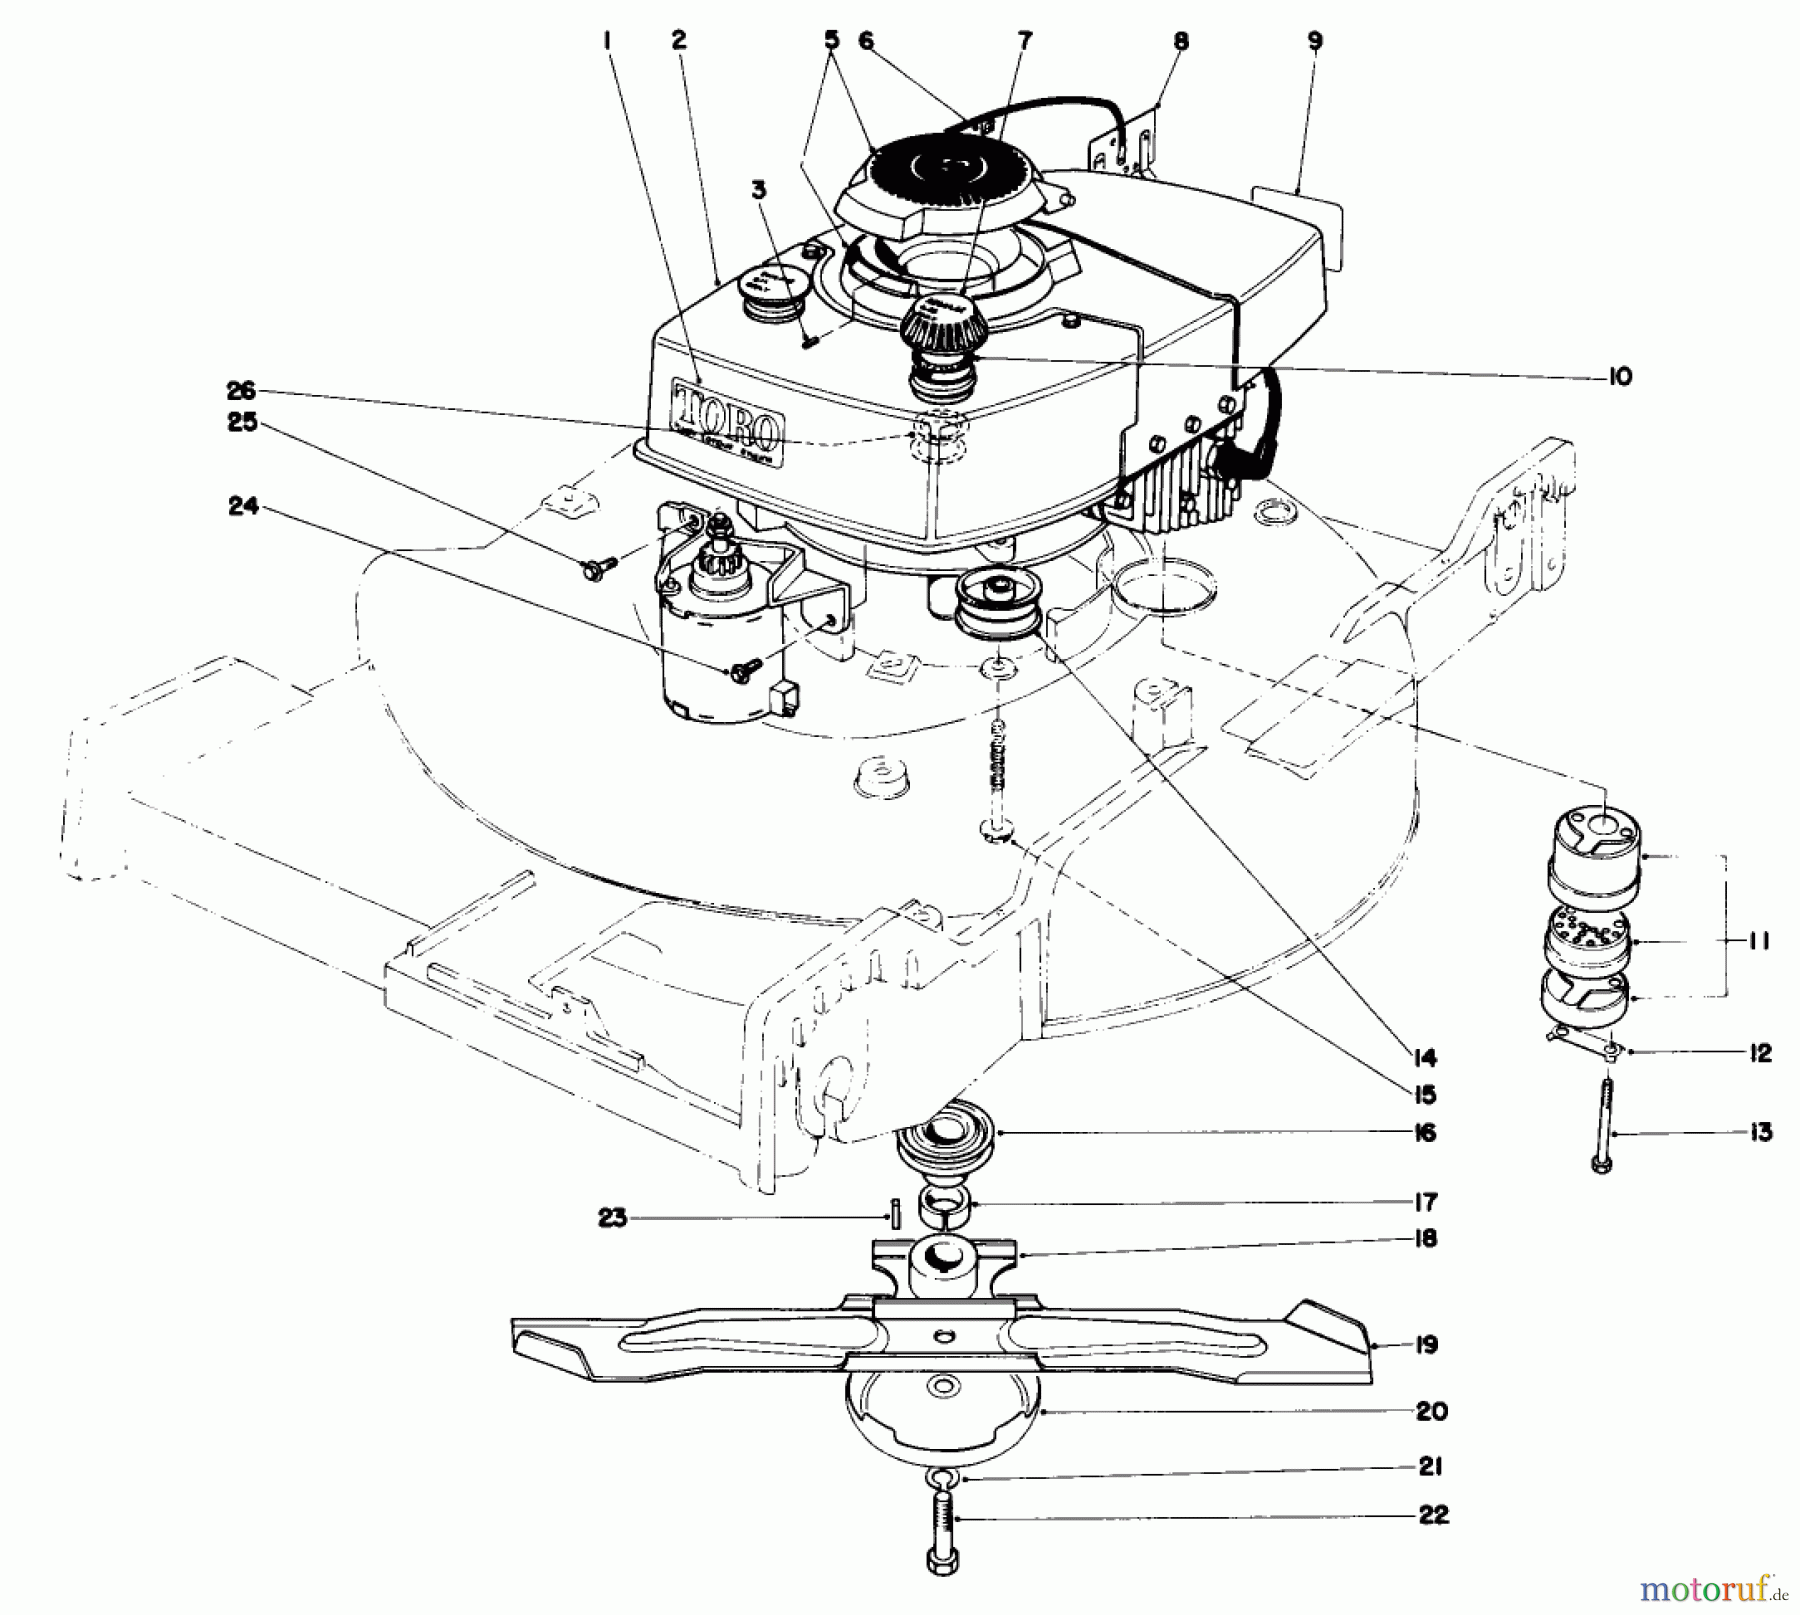  Toro Neu Mowers, Walk-Behind Seite 1 20696 - Toro Lawnmower, 1976 (6000001-7999999) ENGINE ASSEMBLY (MODEL 20696)